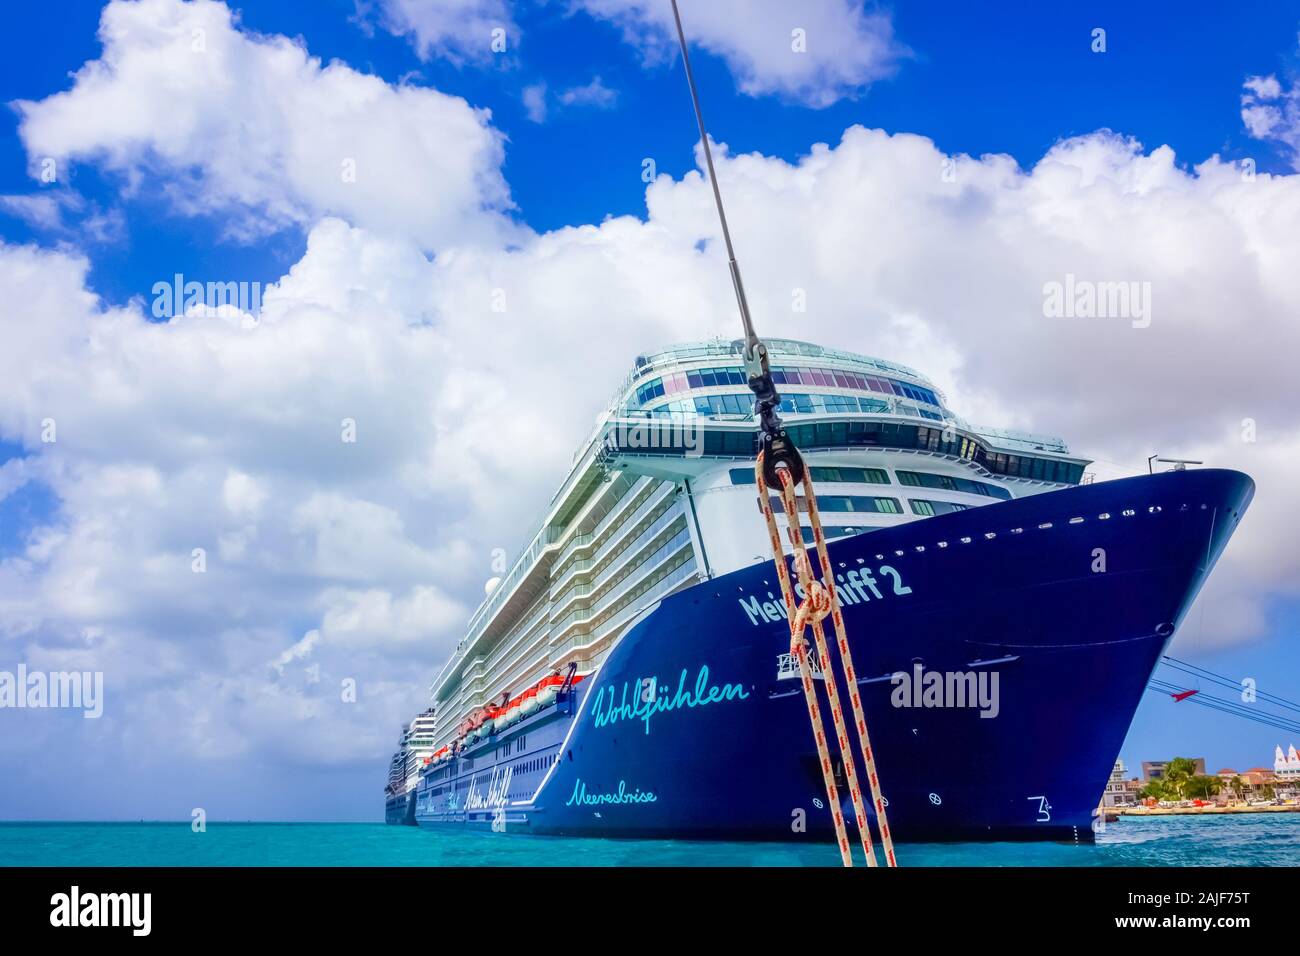 Oranjestad, Aruba - décembre 4, 2019 : Le bateau de croisière Mein Schiff 2 amarré à l'île d'Aruba Banque D'Images